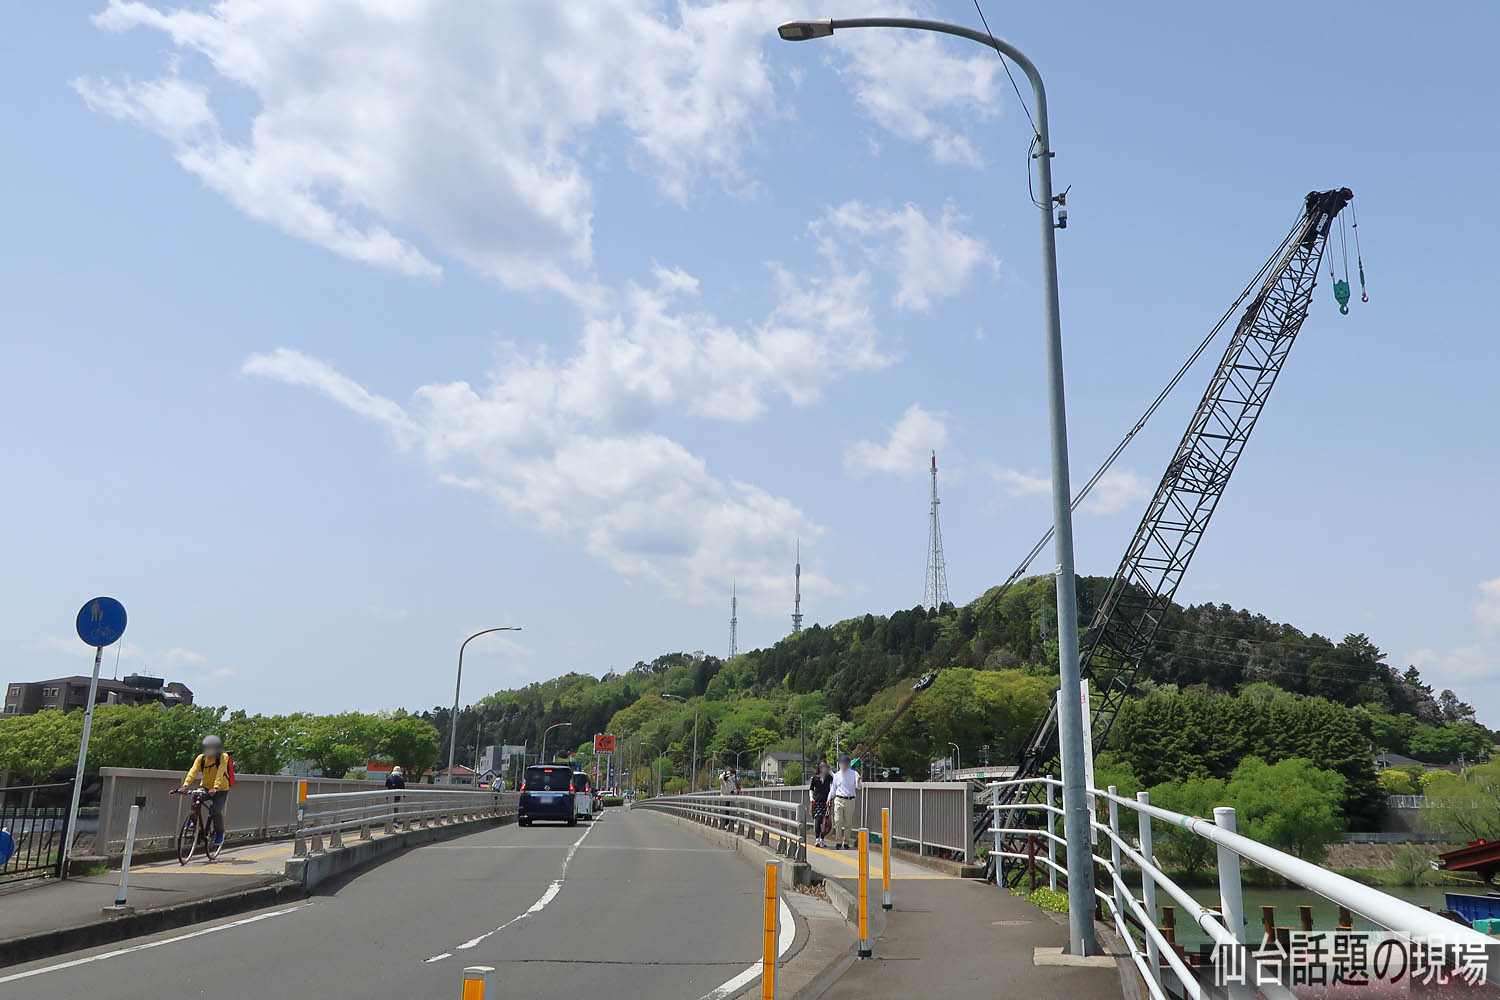 都市計画道路 宮沢根白石線の最新状況 その3 宮沢橋の架け替え工事 21年5月